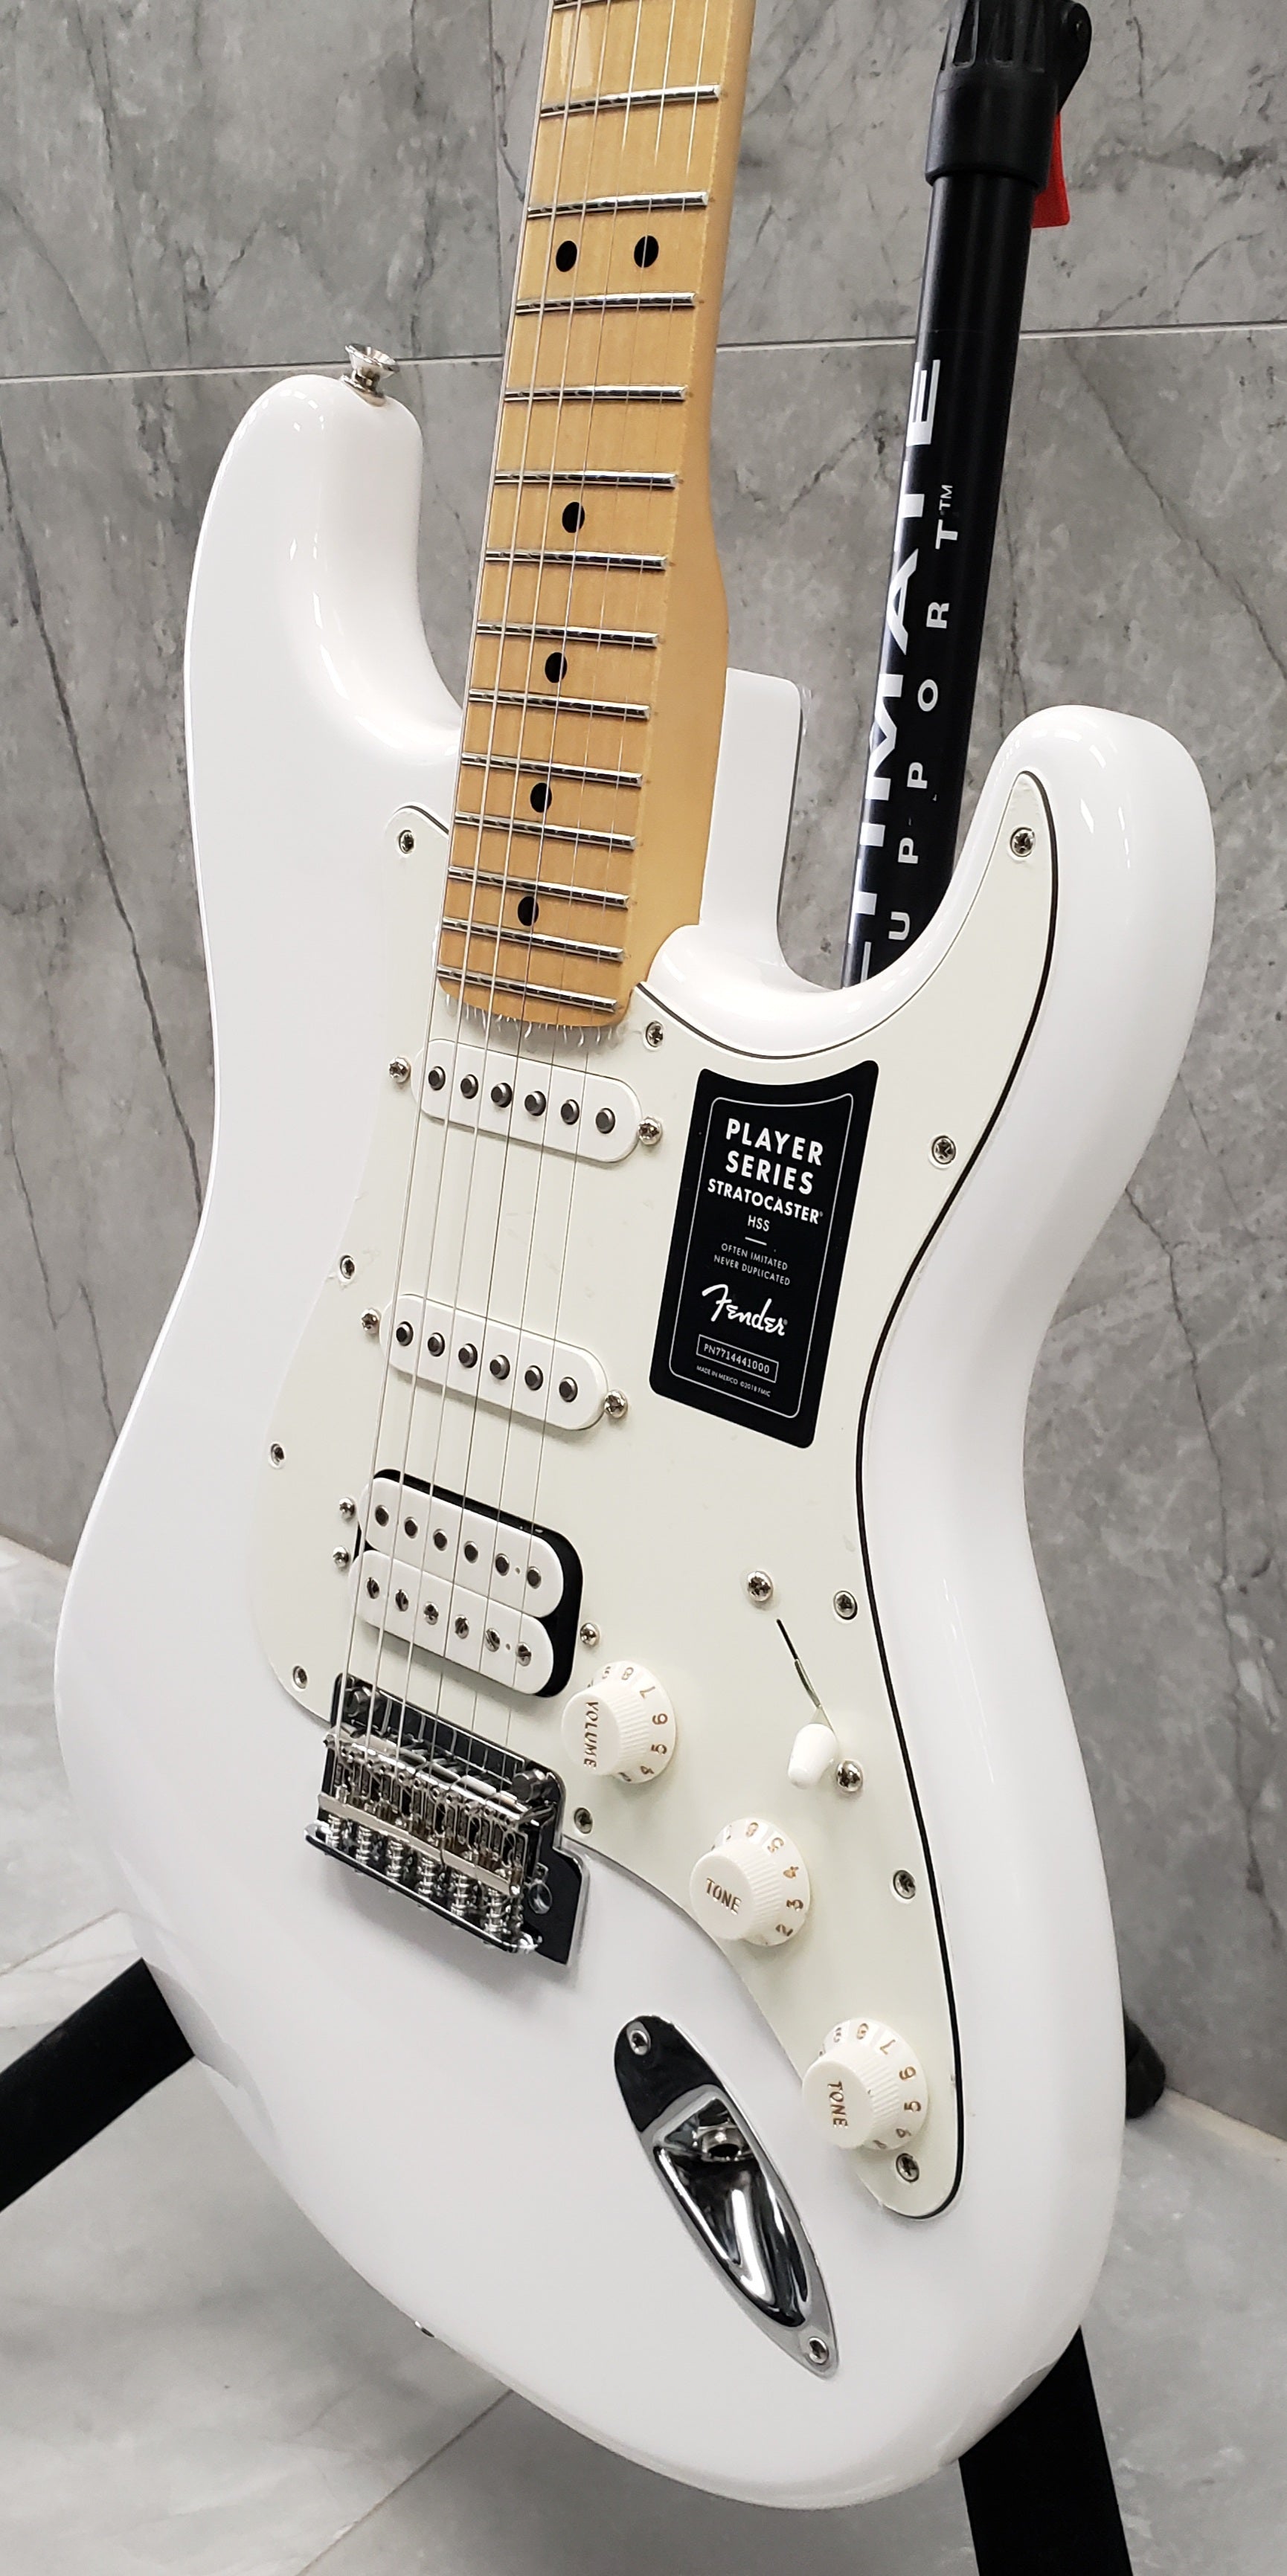 HSS　Fingerboard　—　Fender　Polar　014452251　Music　Player　Maple　Stratocaster　White